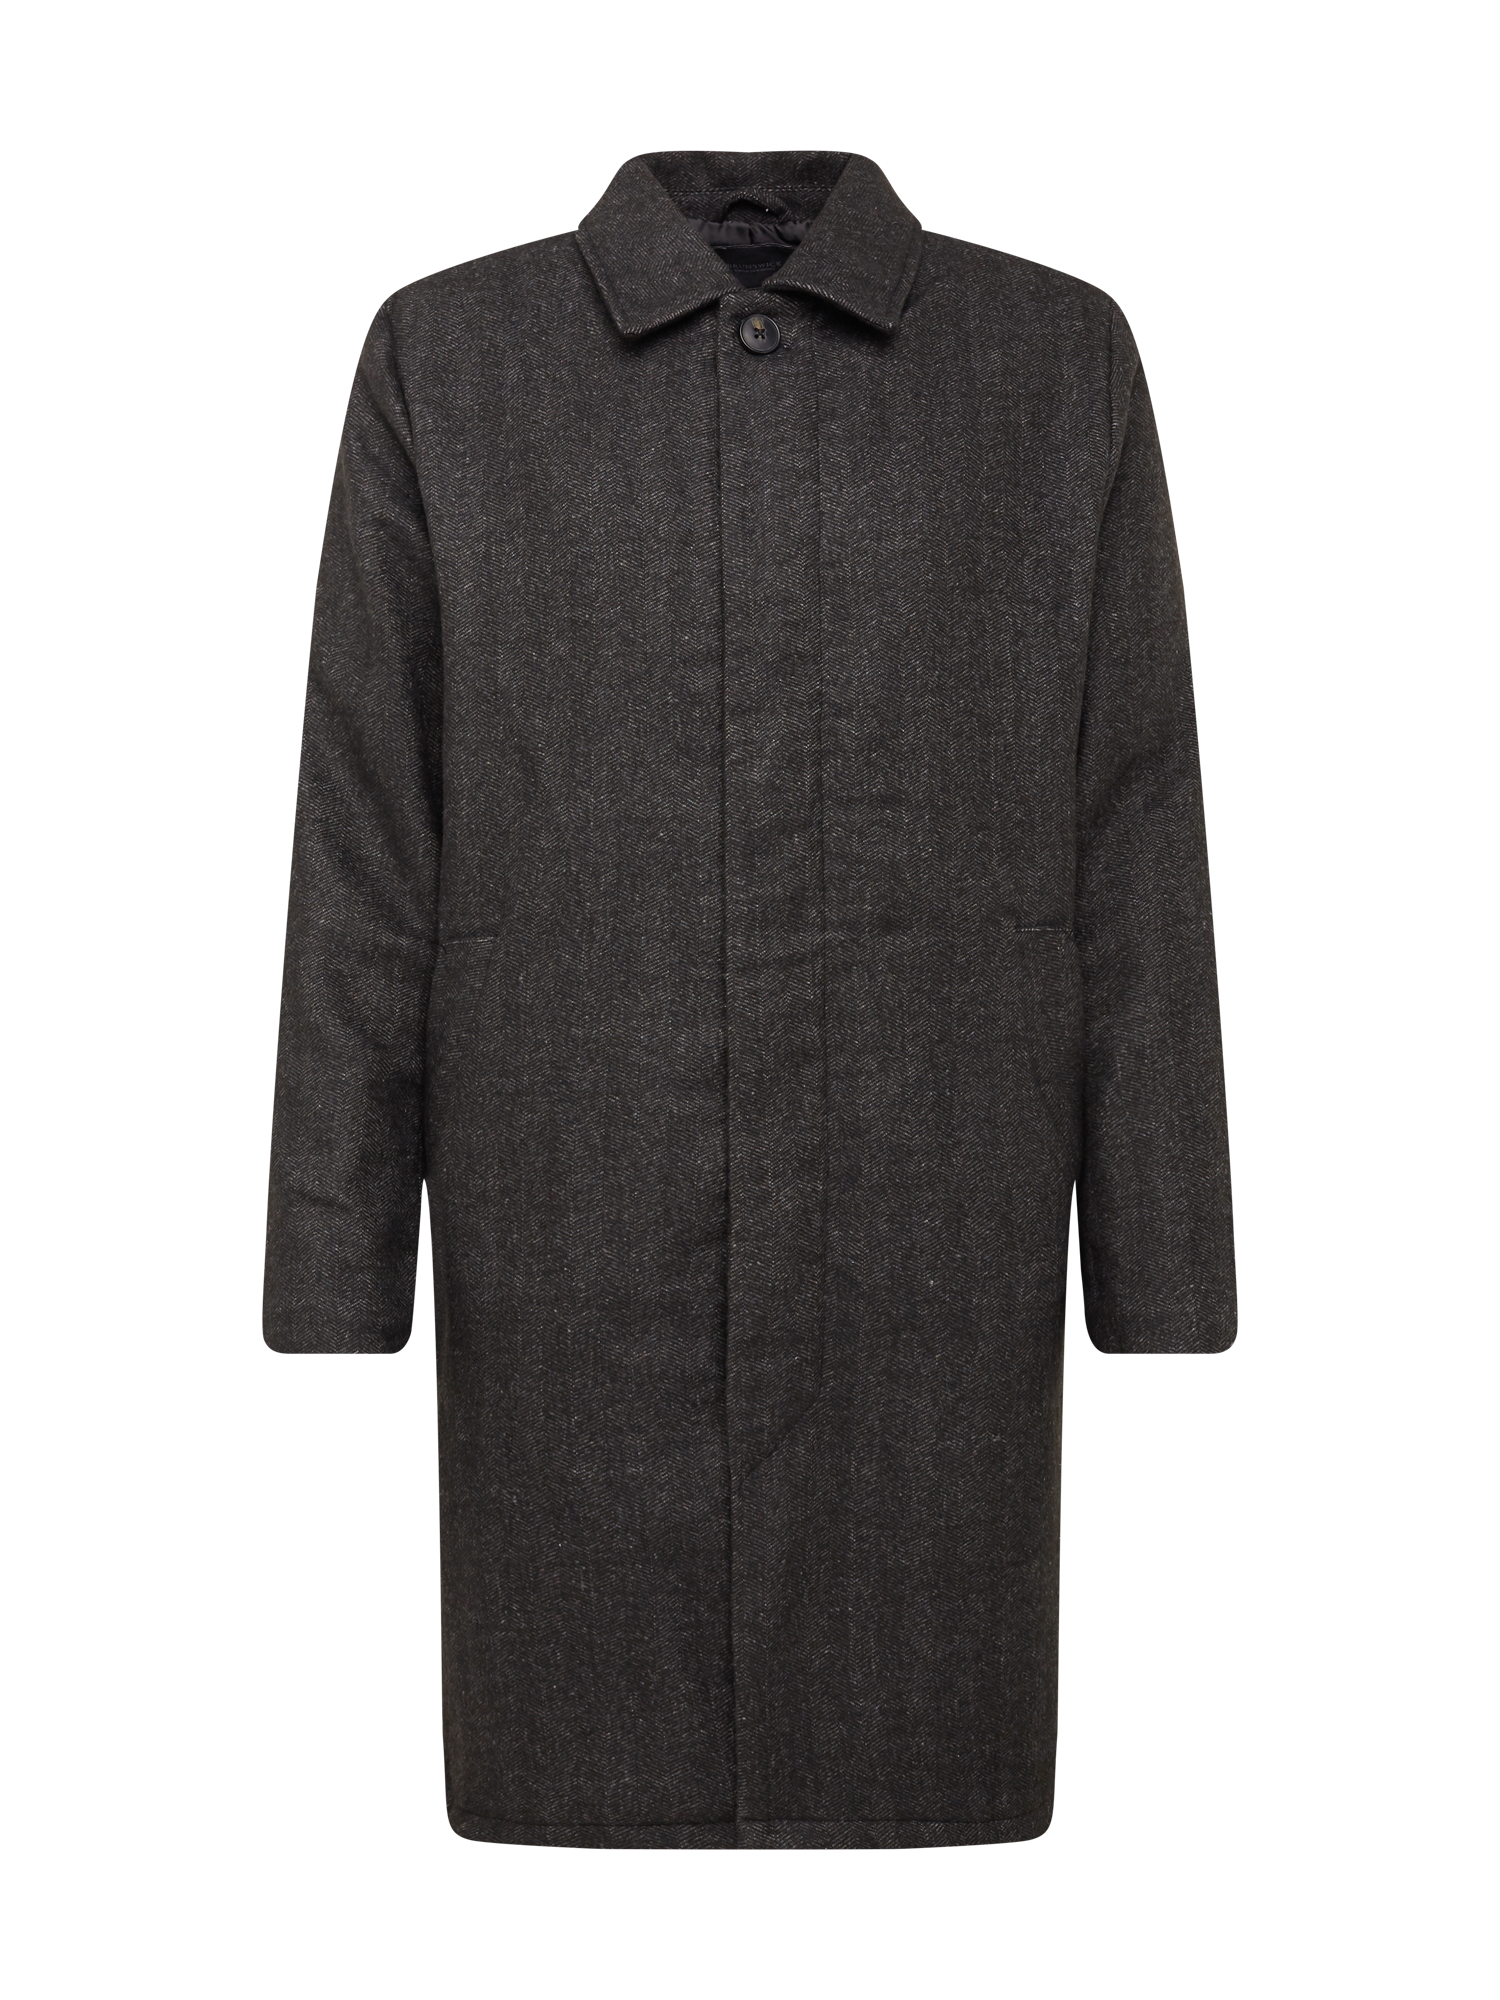 Płaszcze Odzież Cotton On Płaszcz przejściowy w kolorze Antracytowy, Jasnoszarym 